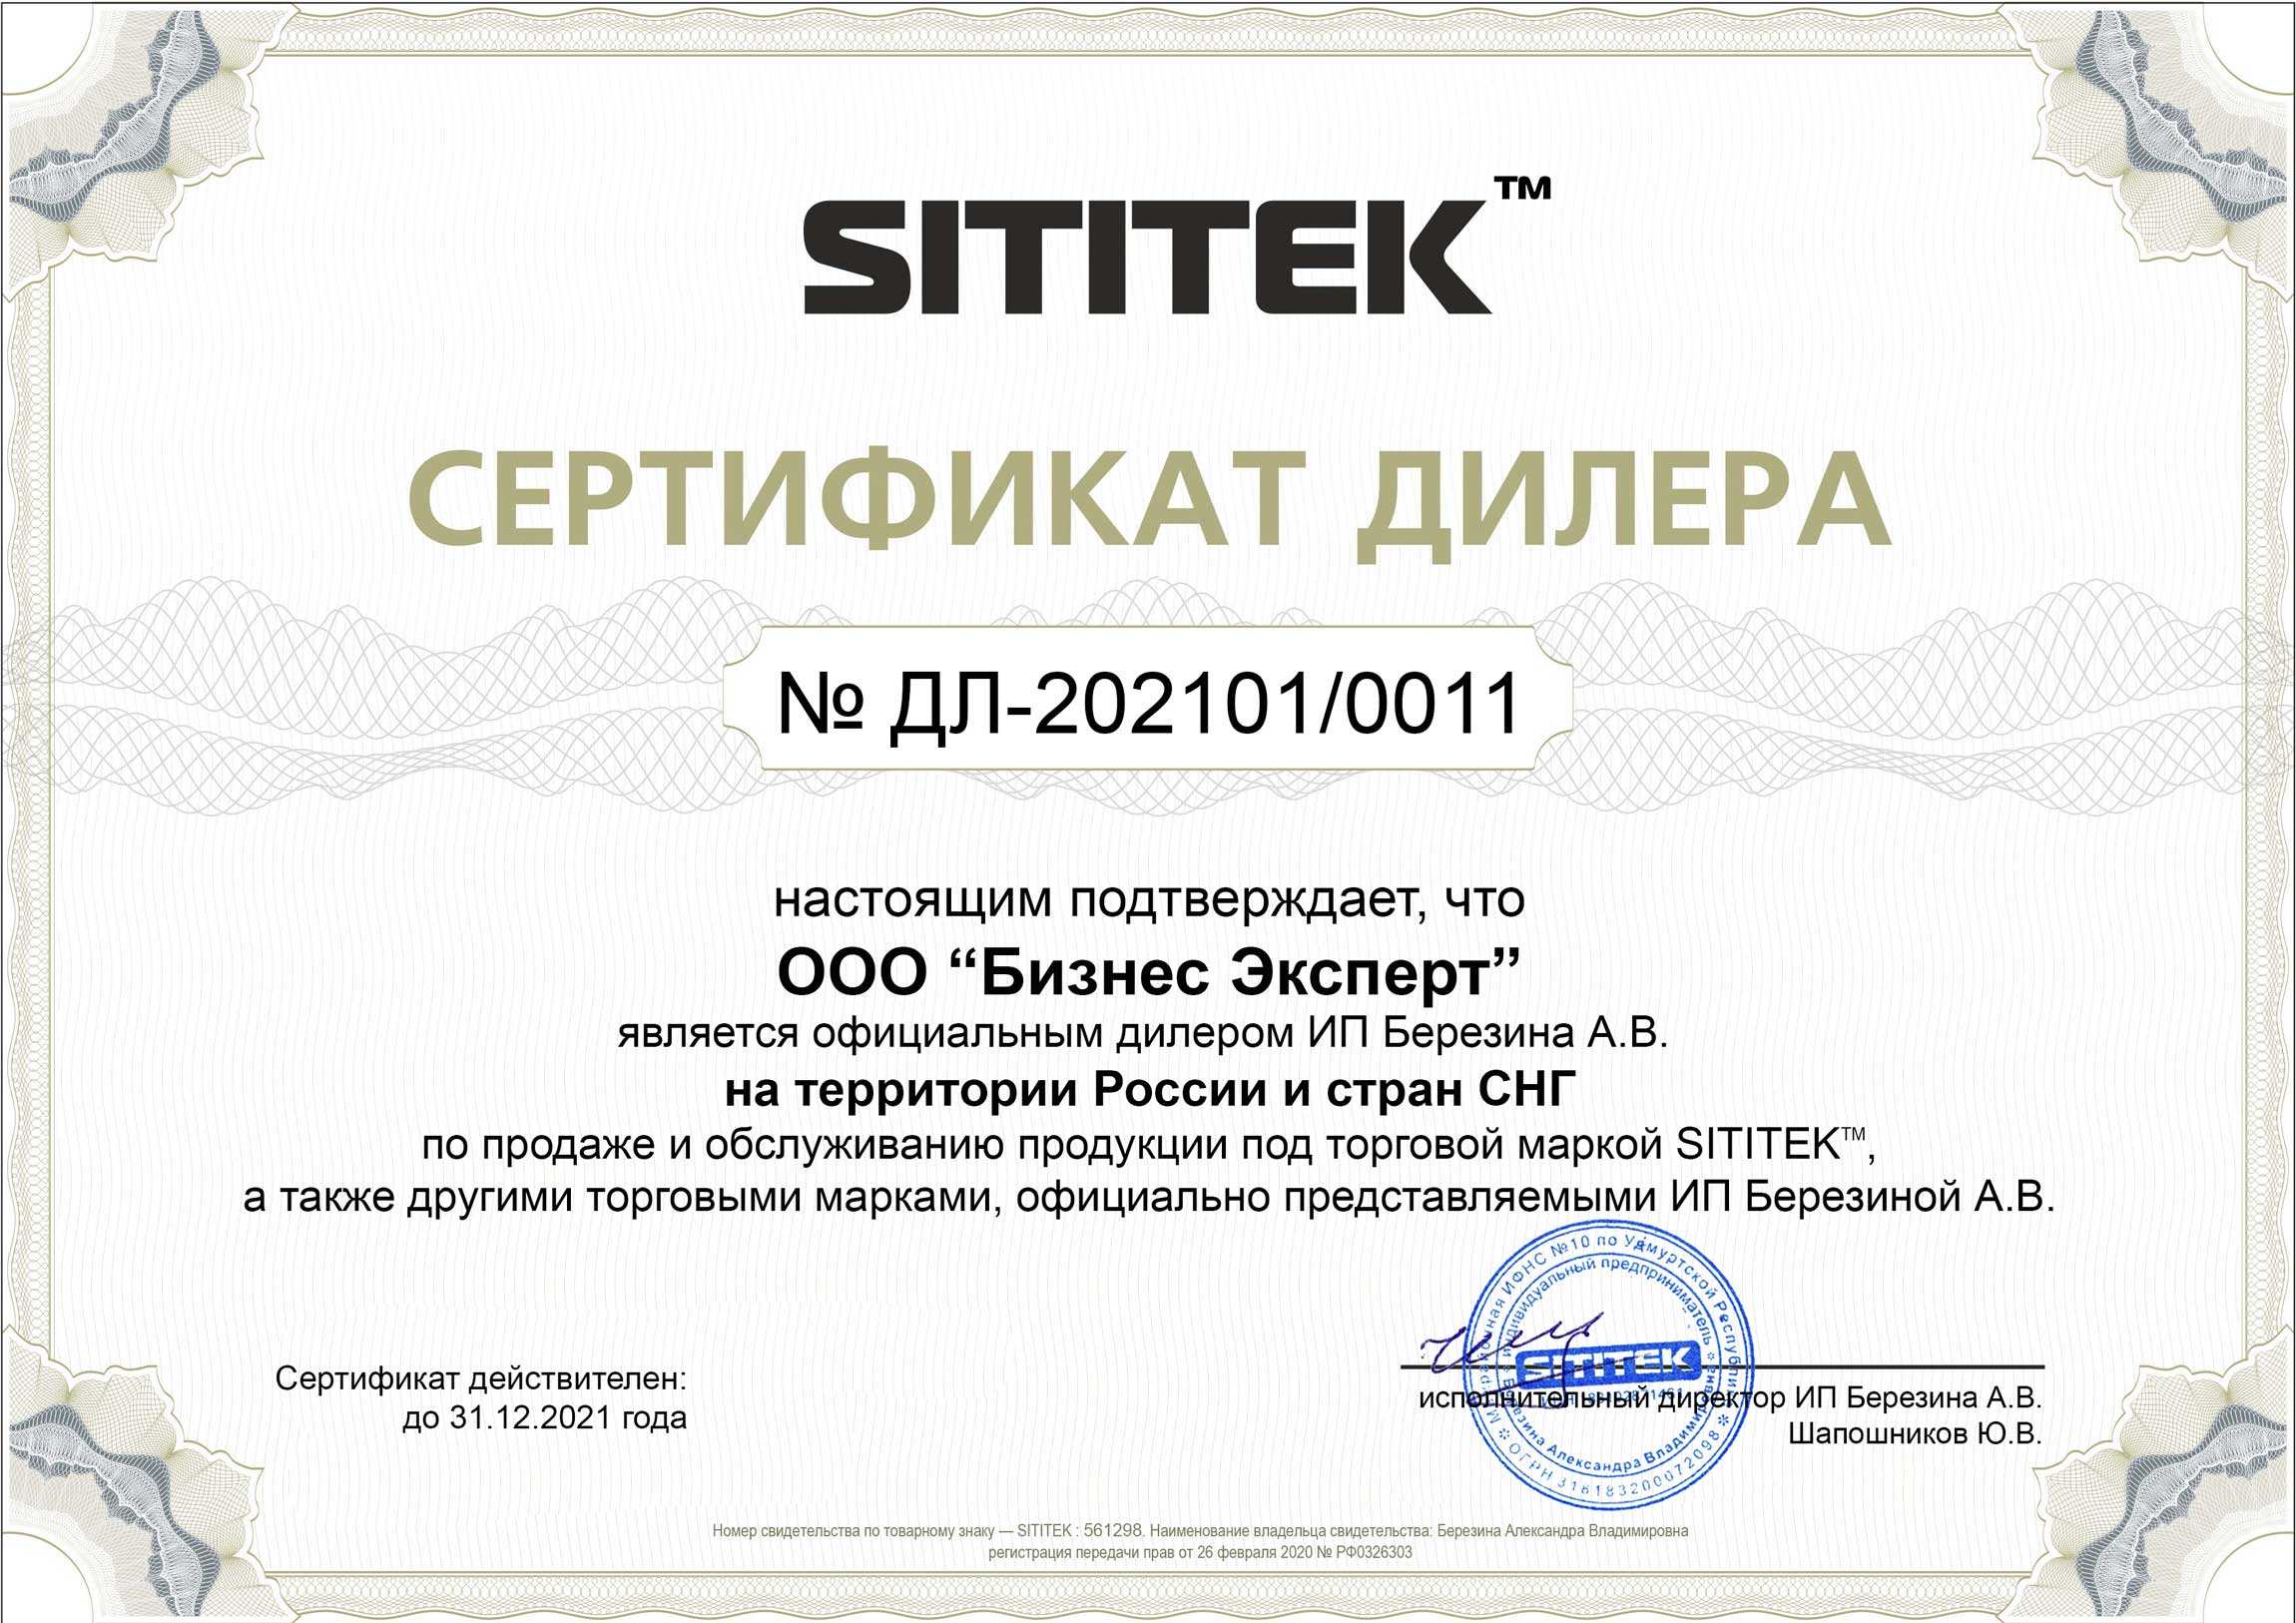 Сертификат дилера на право реализации продукции компании Сититек